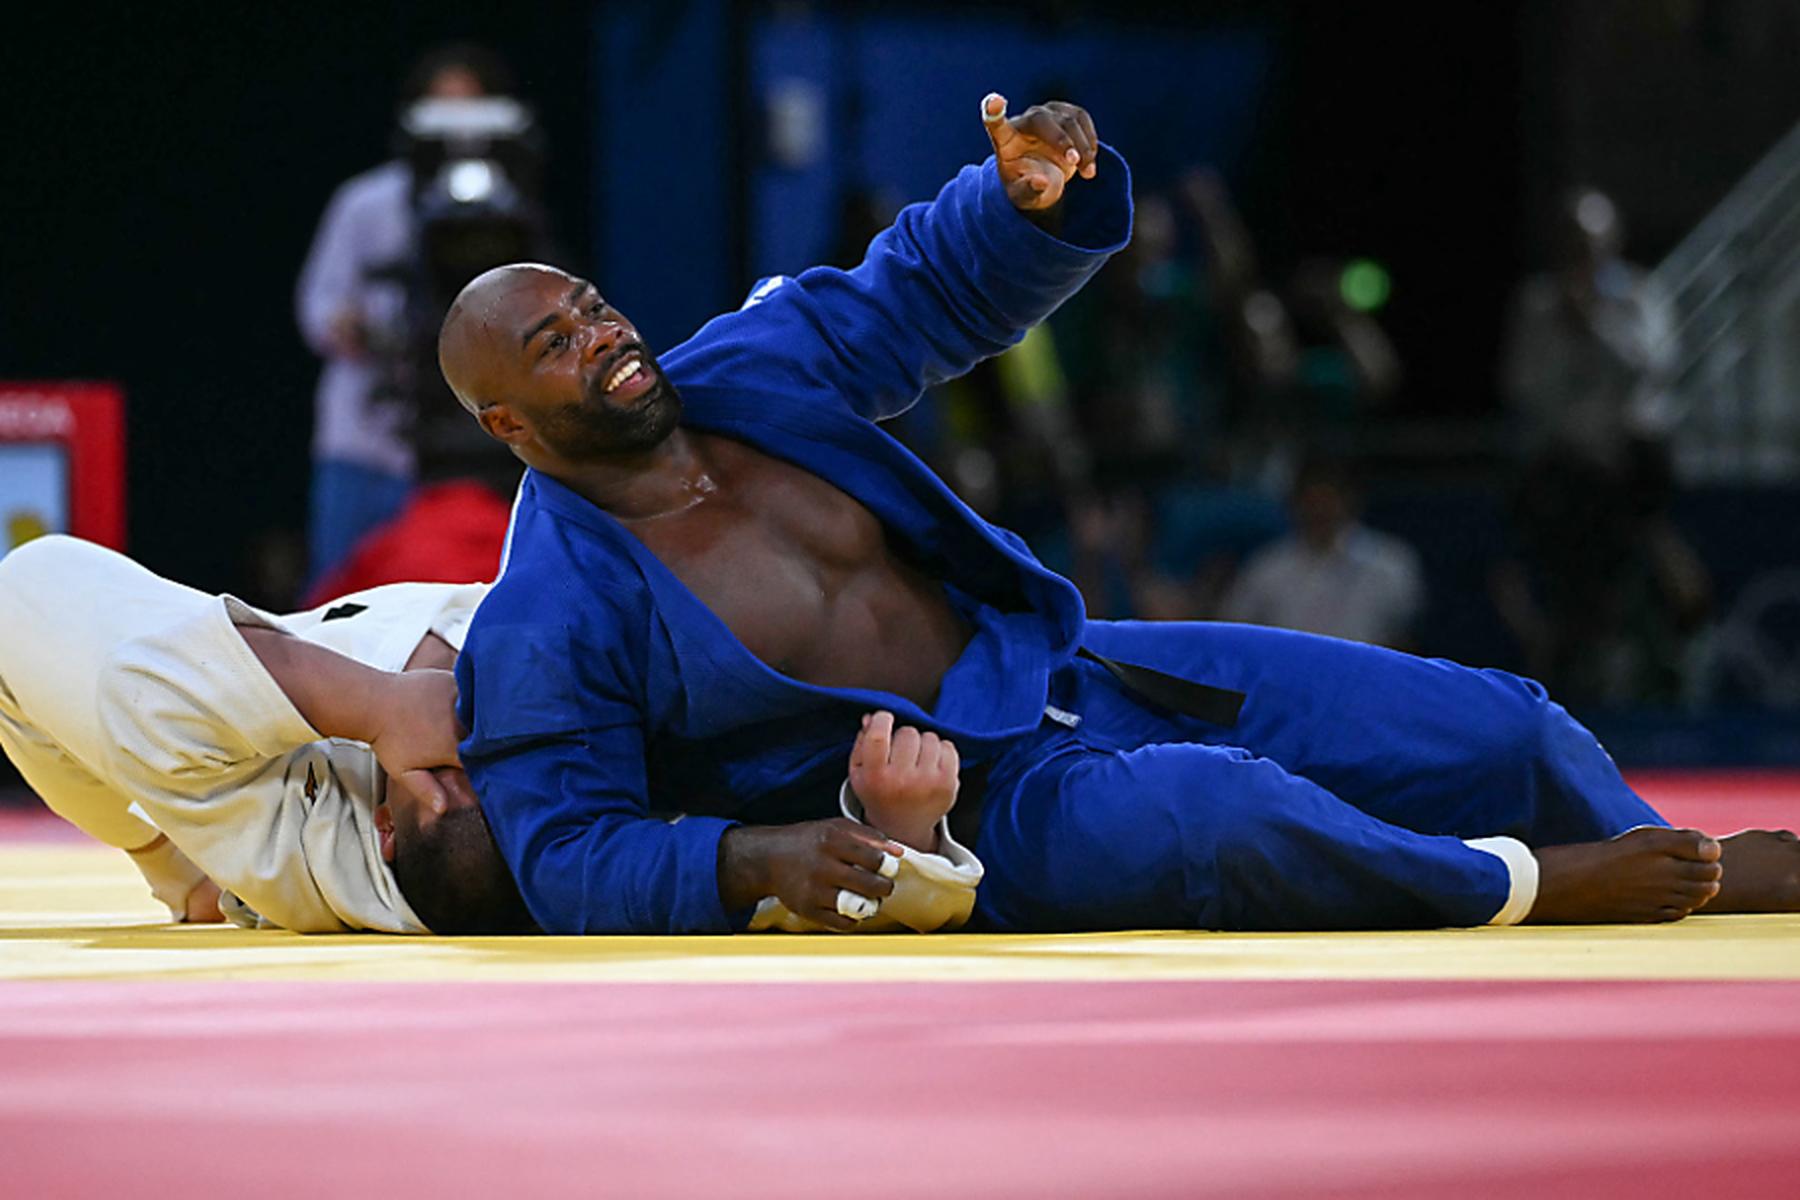 Paris: Judoka Teddy Riner jubelte mit Team über fünftes Gold